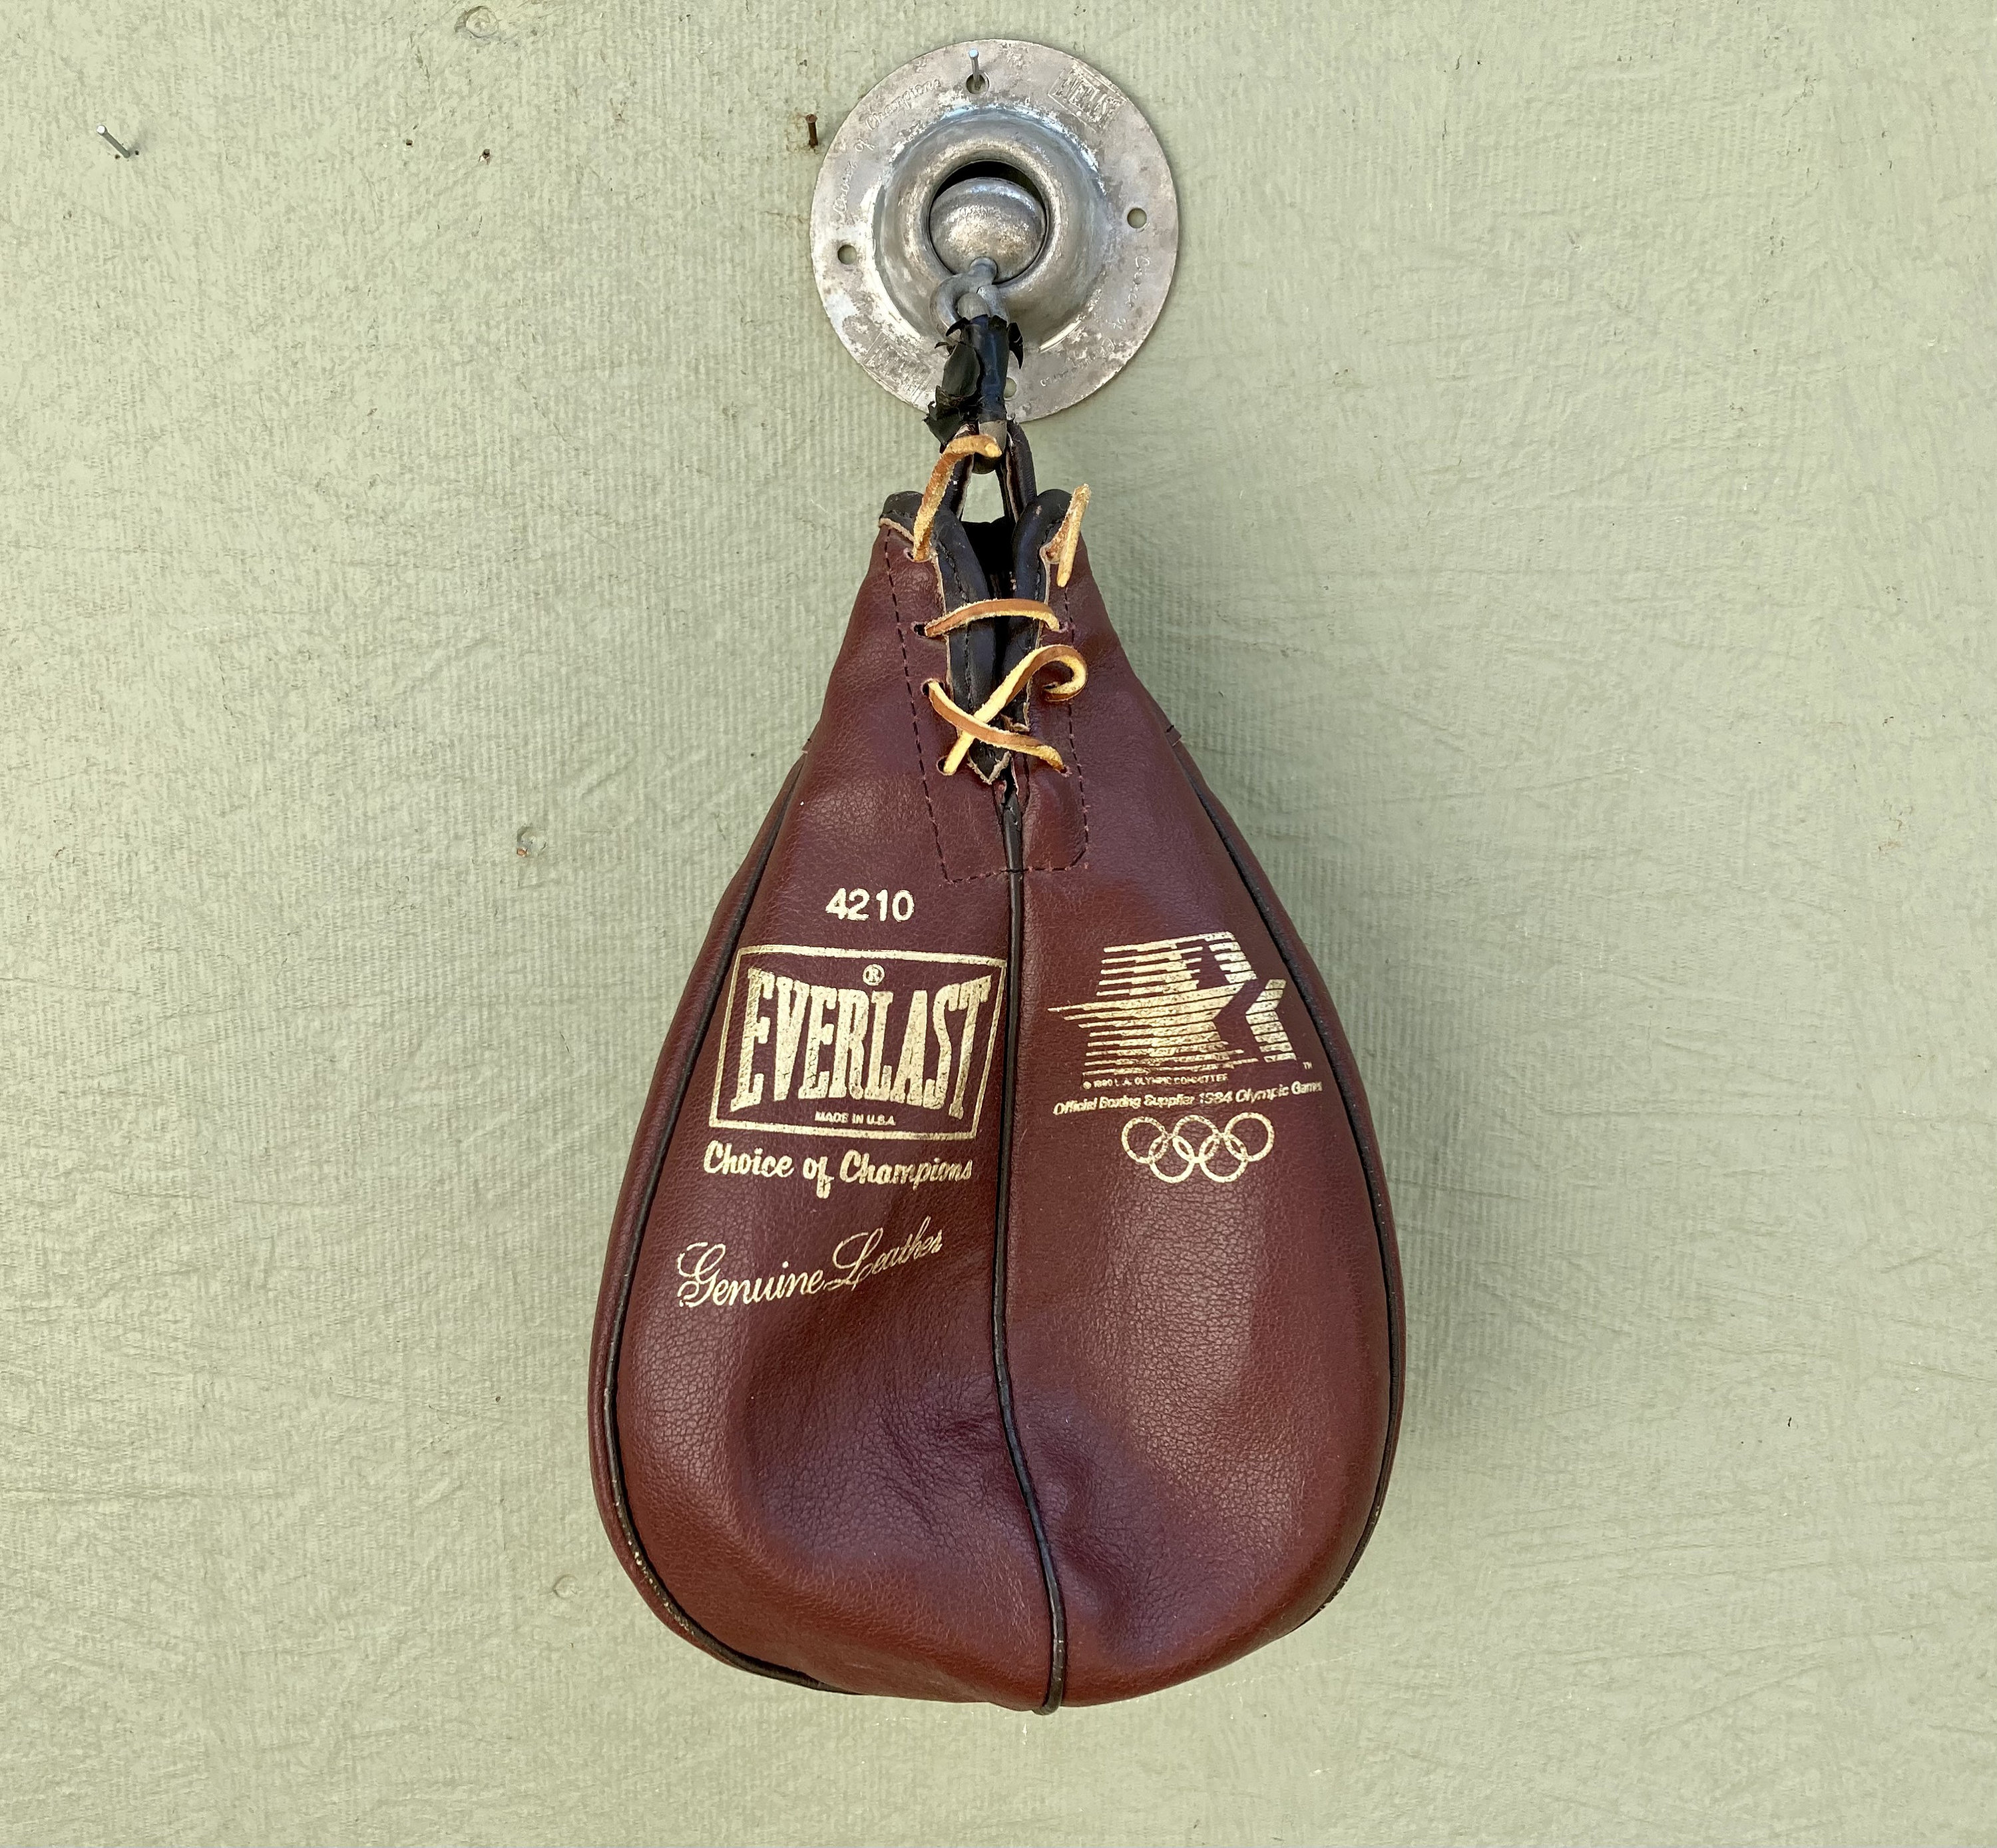 omverwerping Aannames, aannames. Raad eens erger maken Boxing Punching Bag Vintage 4210 EVERLAST Genuine Leather - Etsy